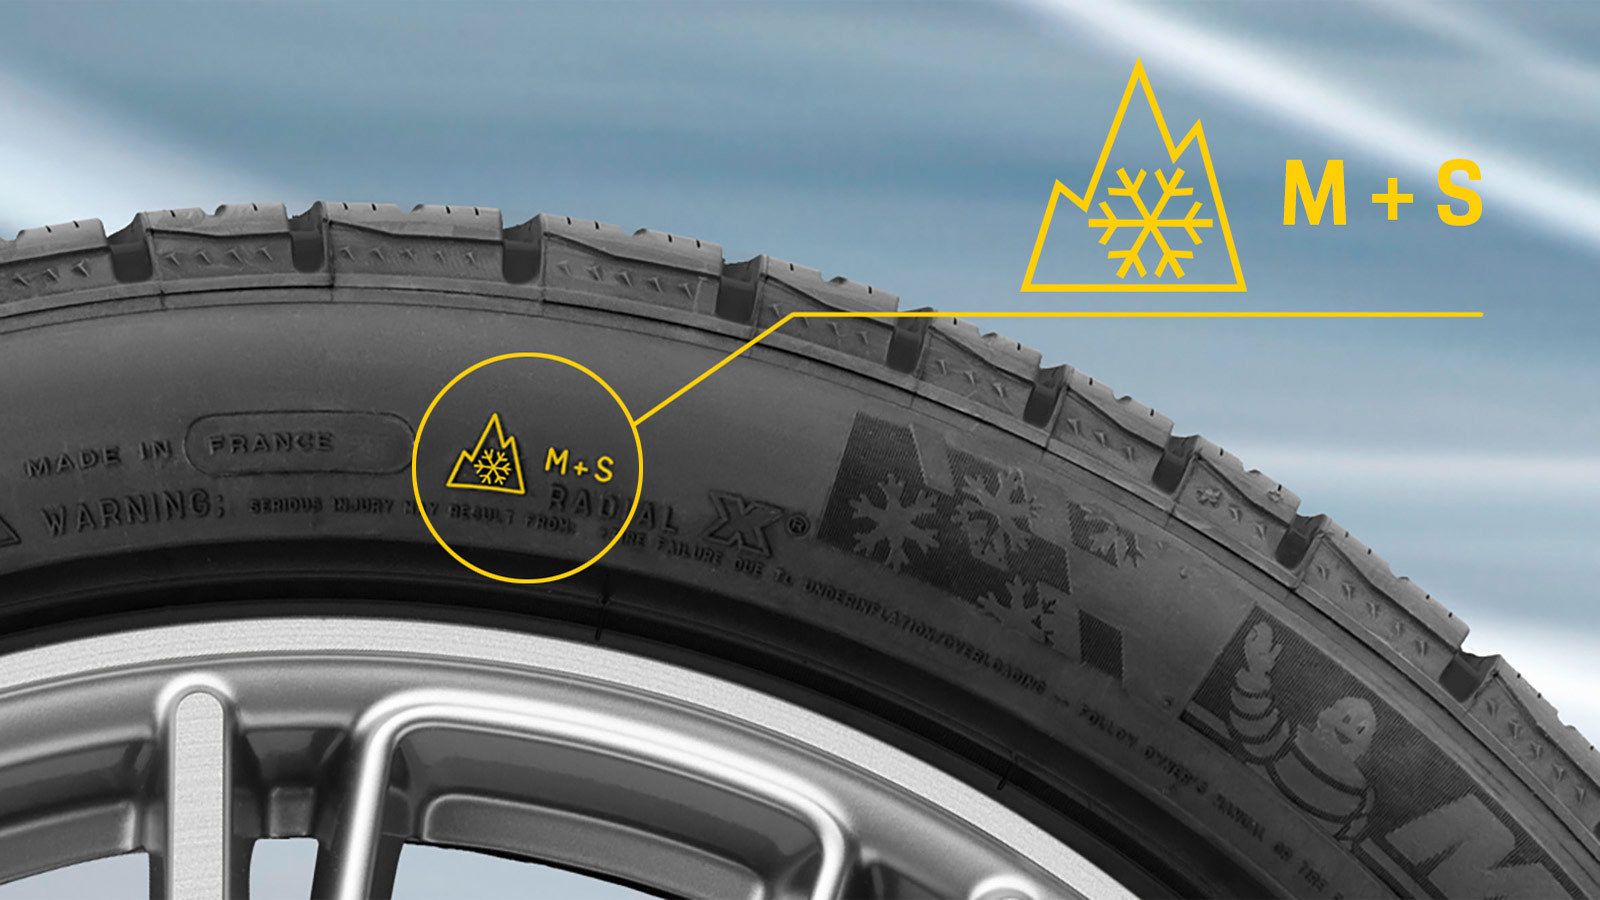 Vale la pena llevar neumáticos de invierno? - It's a powder day!